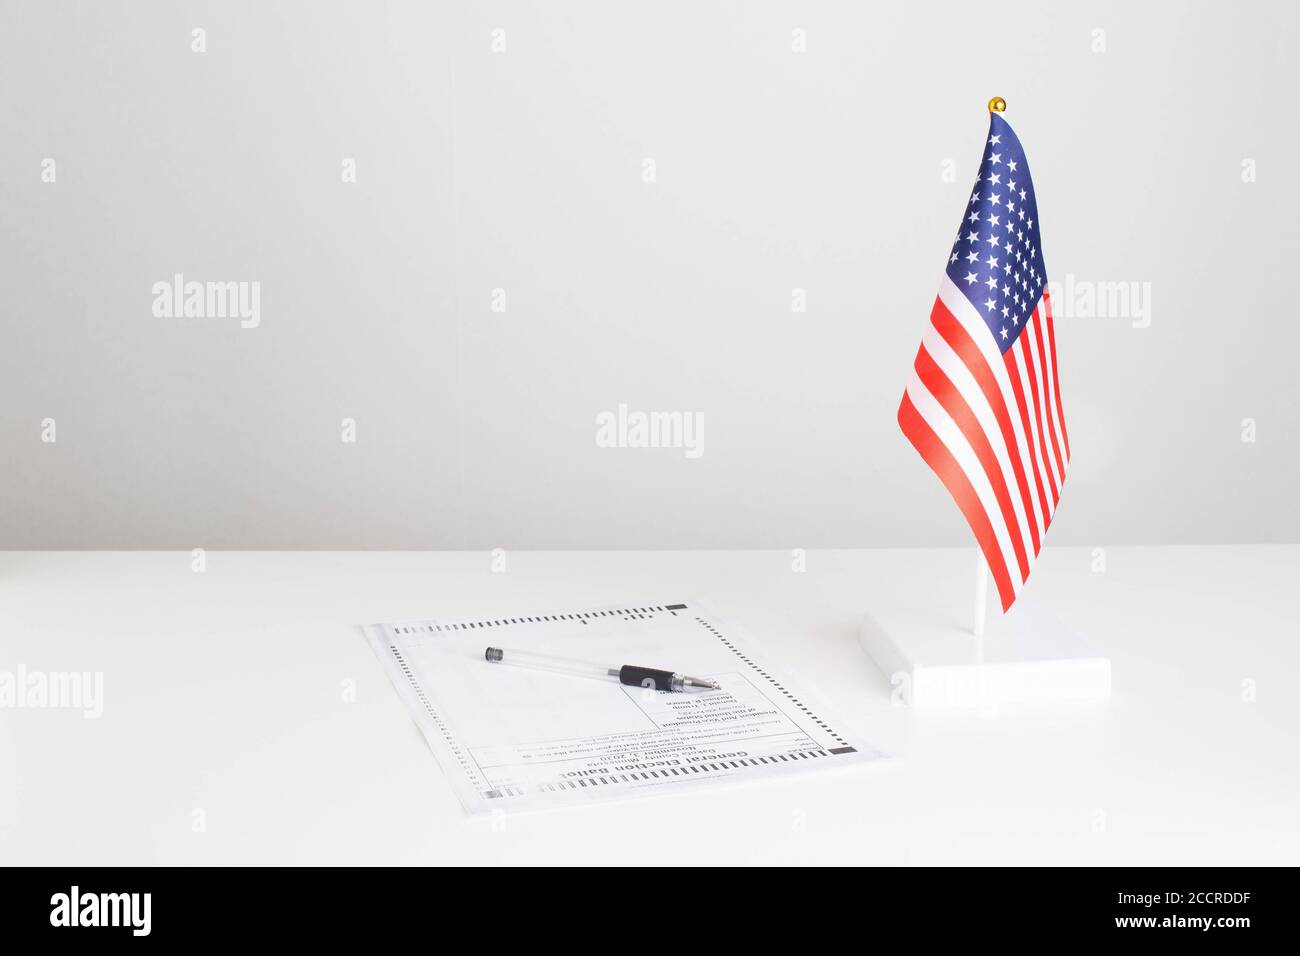 La penna e il documento elettorale per le elezioni presidenziali sono sul tavolo, la bandiera americana su sfondo bianco. Concetto DI elezione presidenziale DEGLI STATI UNITI Foto Stock